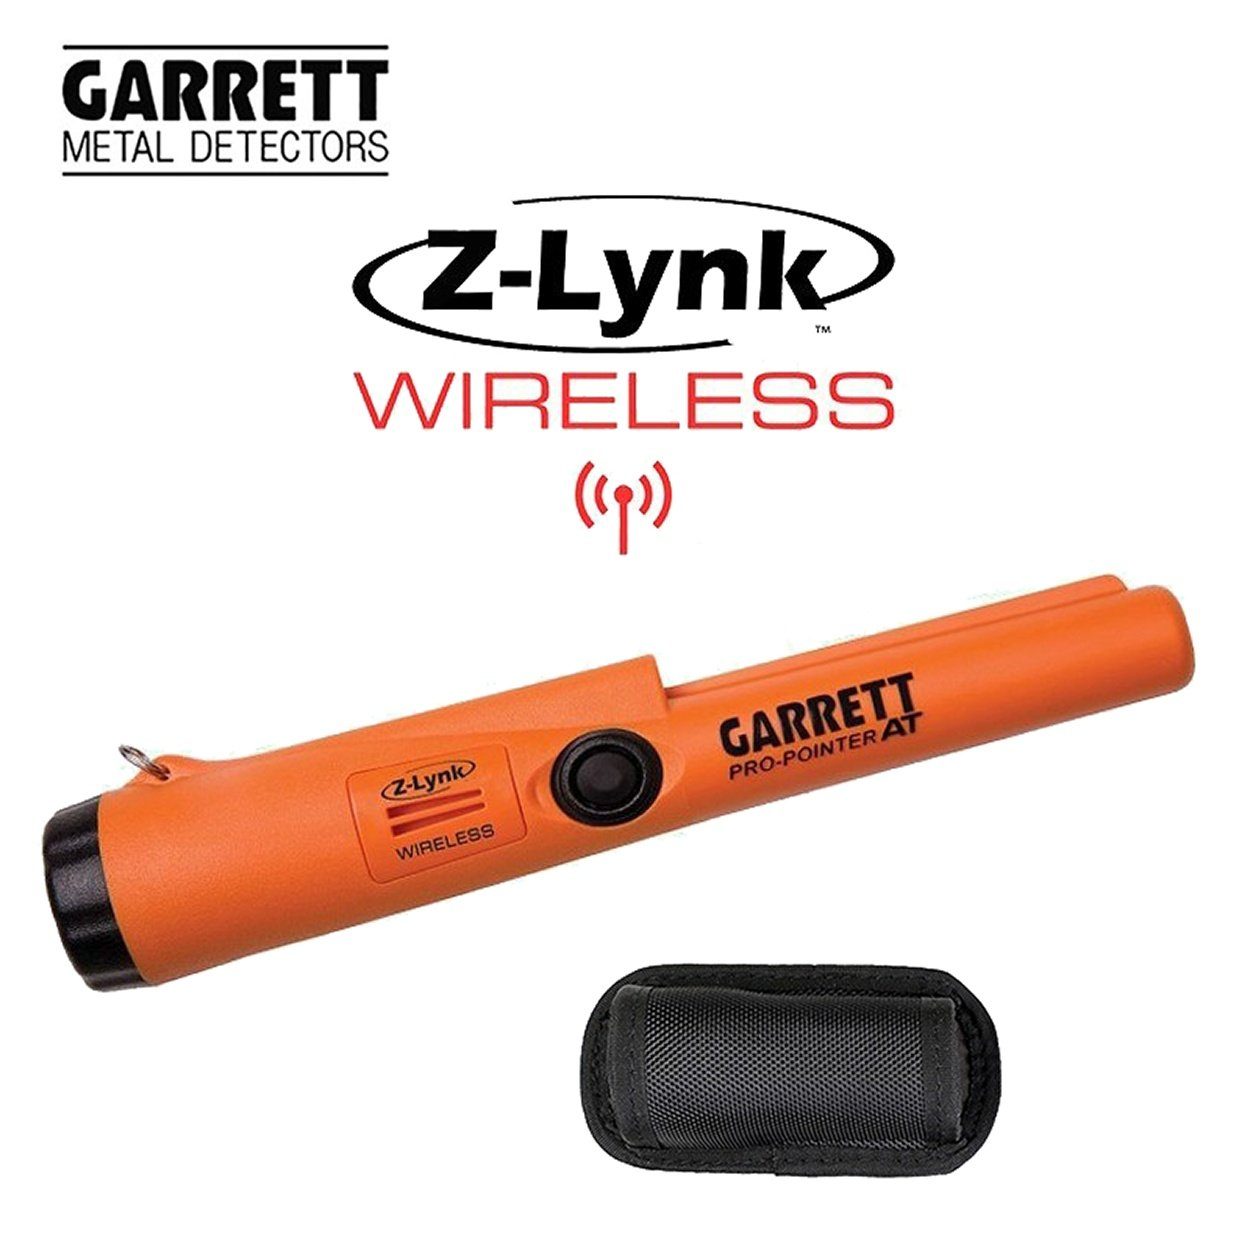 AT Garrett Pinpointer, Metalldetektor Pro Pointer Z-Lynk Wasserdicht Wireless